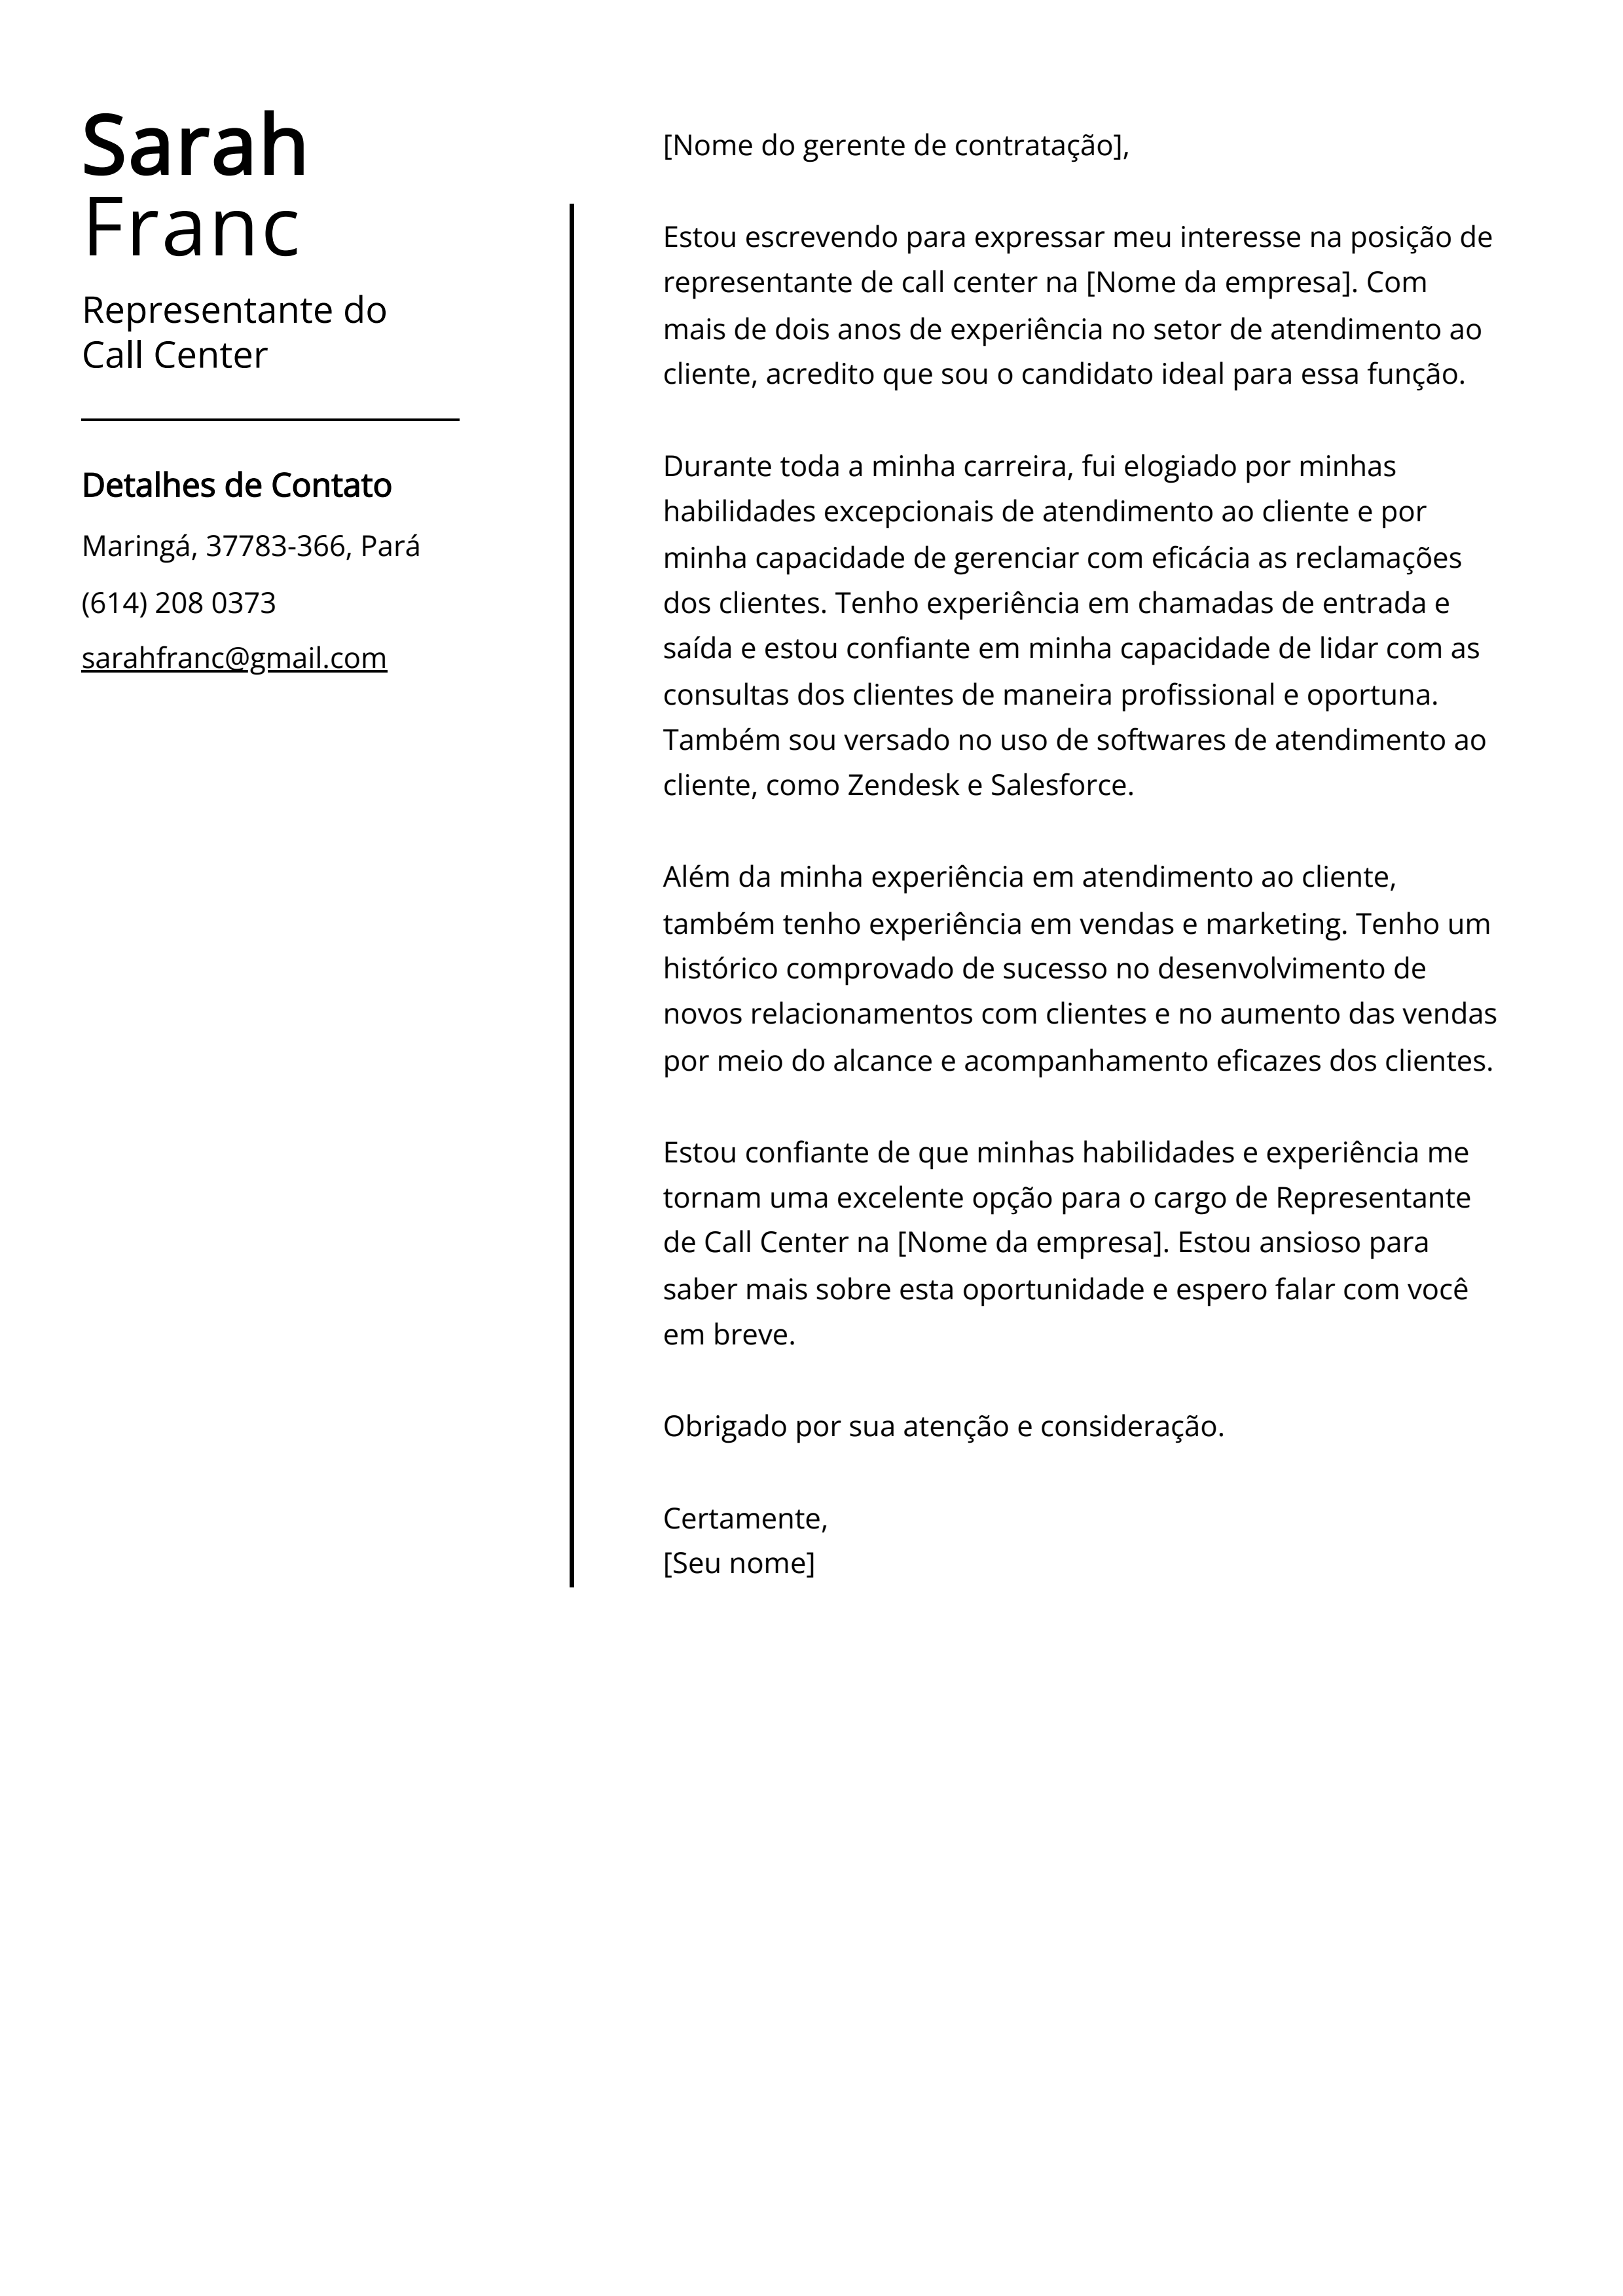 Exemplo de carta de apresentação de representante de call center